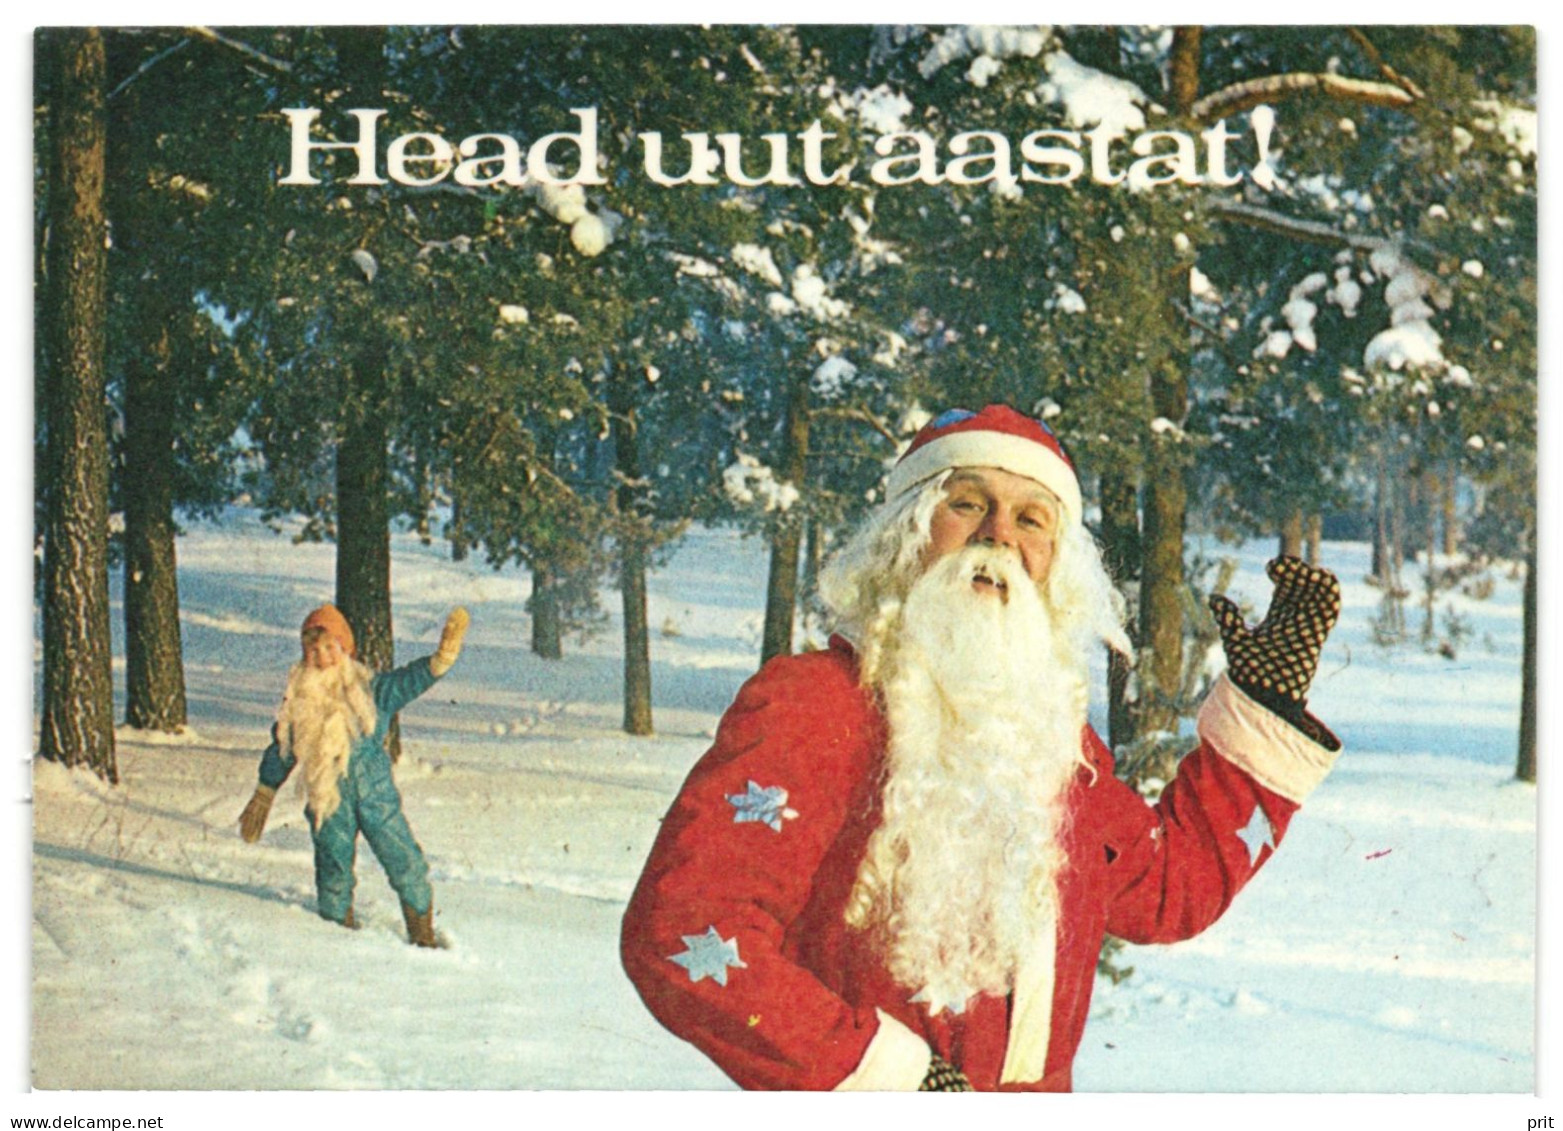 Santa Claus & Elf, Christmas, Happy New Year! 1986 Unused Vintage Postcard. Publisher Eesti Raamat, Tallinn, Estonia - Estonie